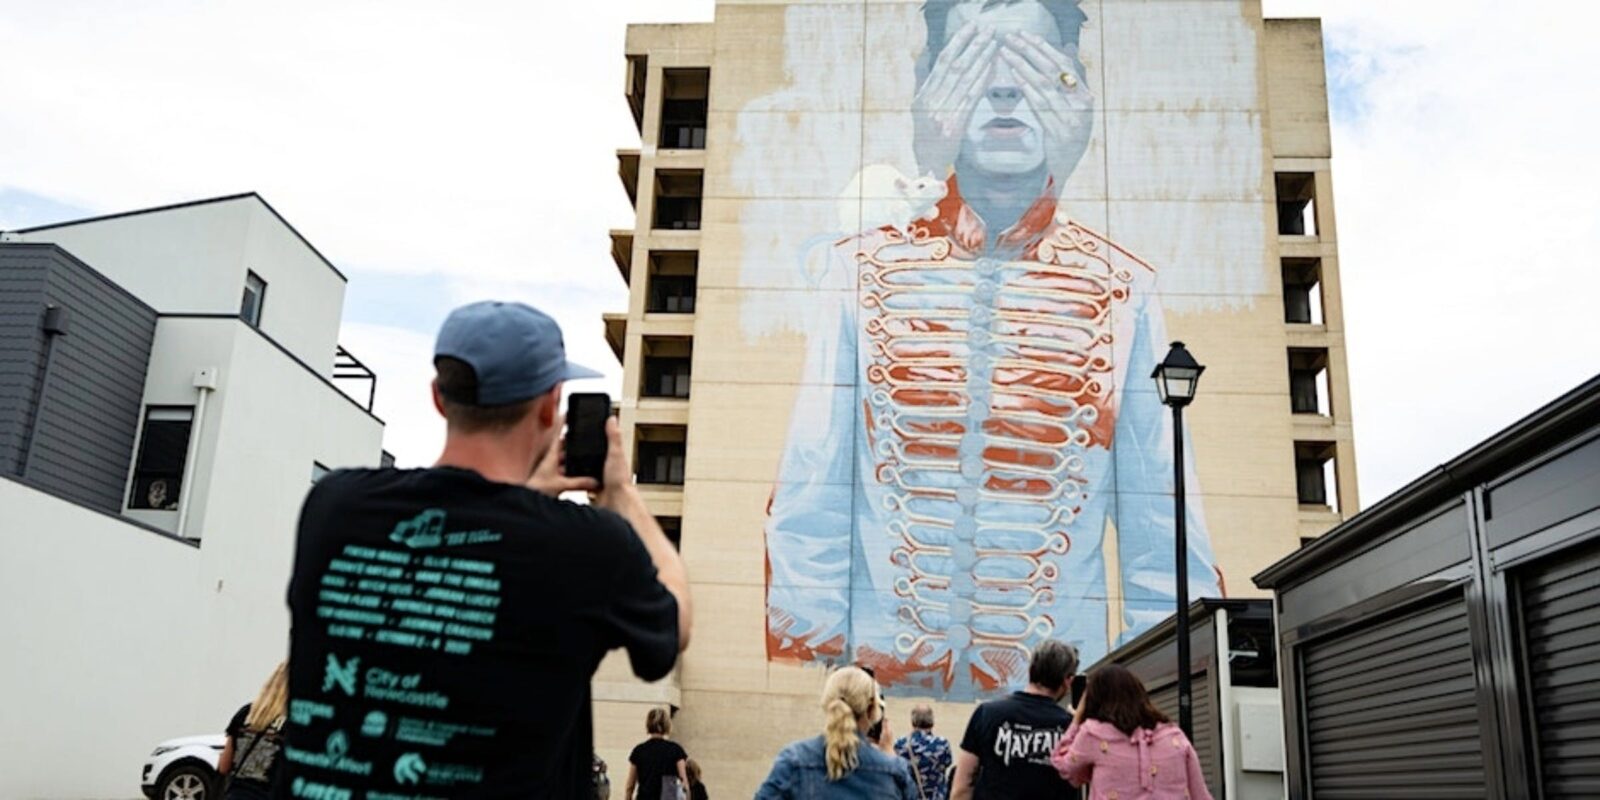 Port Adelaide Street Art Tours